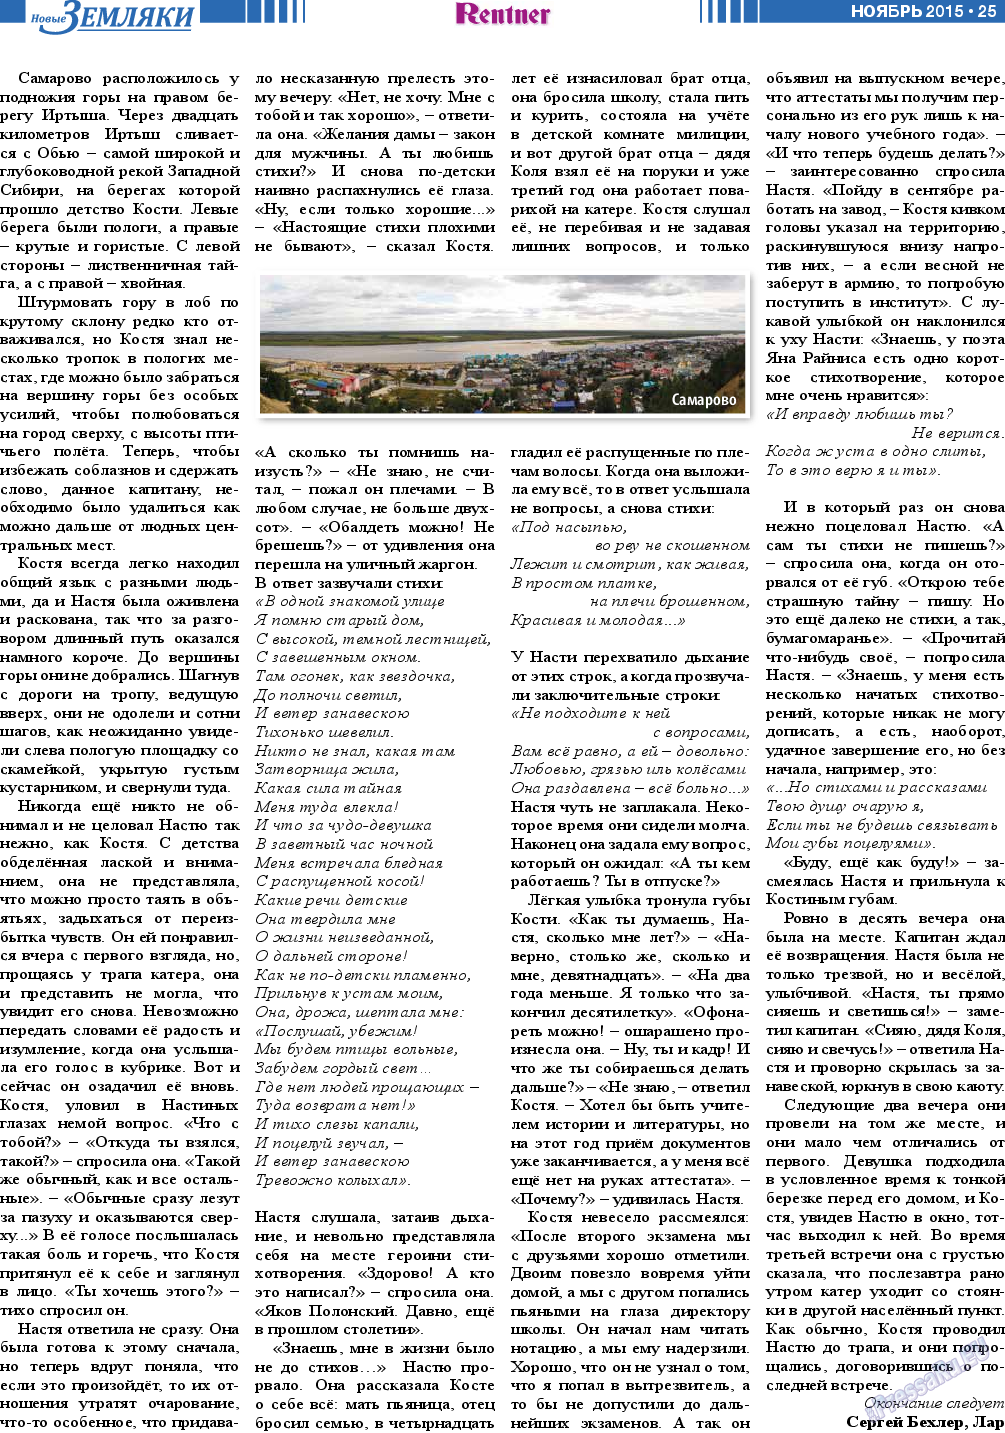 Новые Земляки, газета. 2015 №11 стр.25